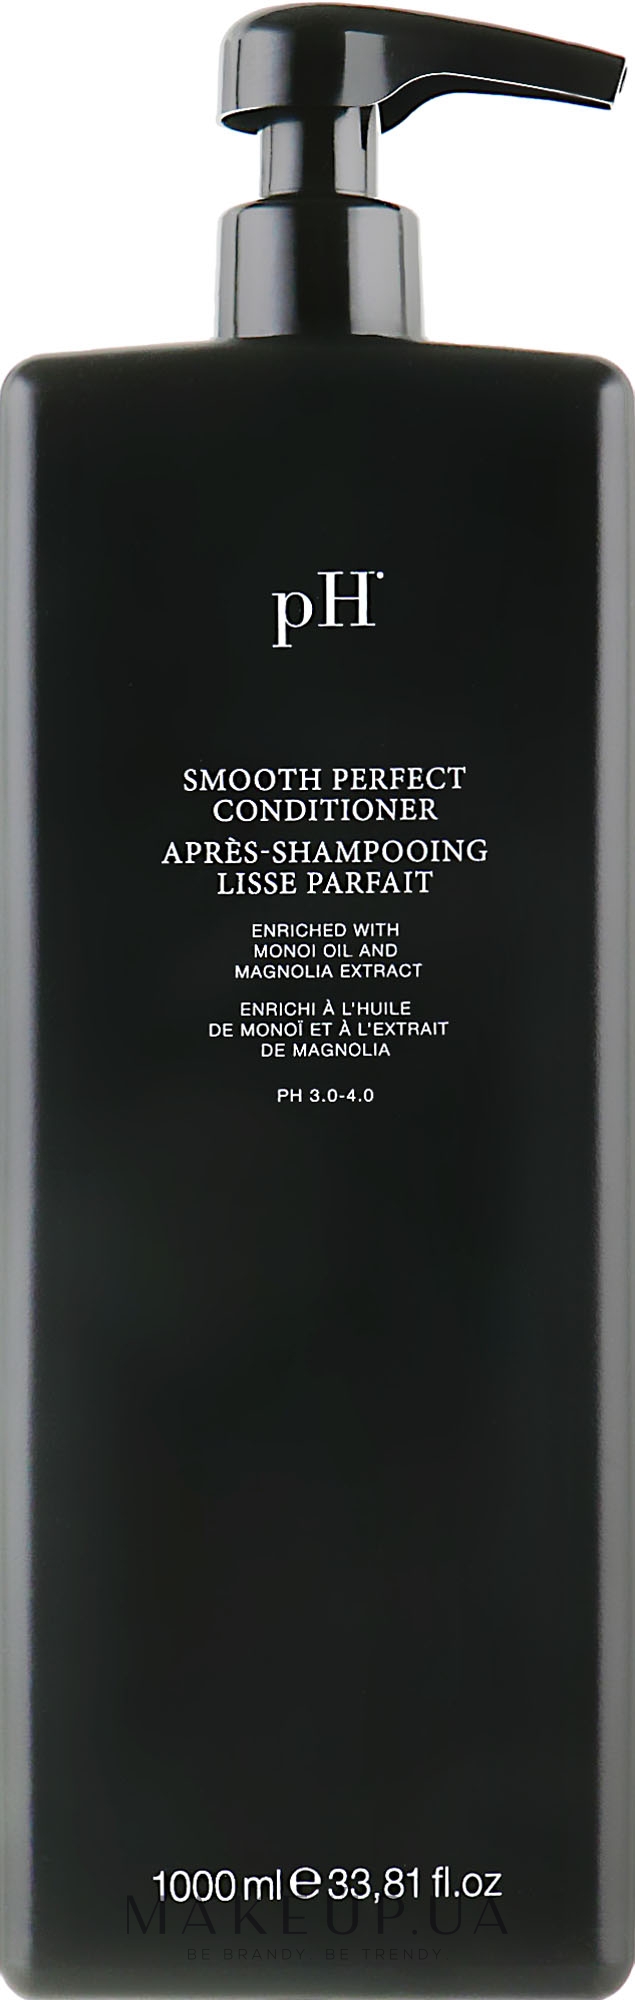 Кондиционер "Идеальная Гладкость" - Ph Laboratories Smooth Perfect Conditioner — фото 1000ml